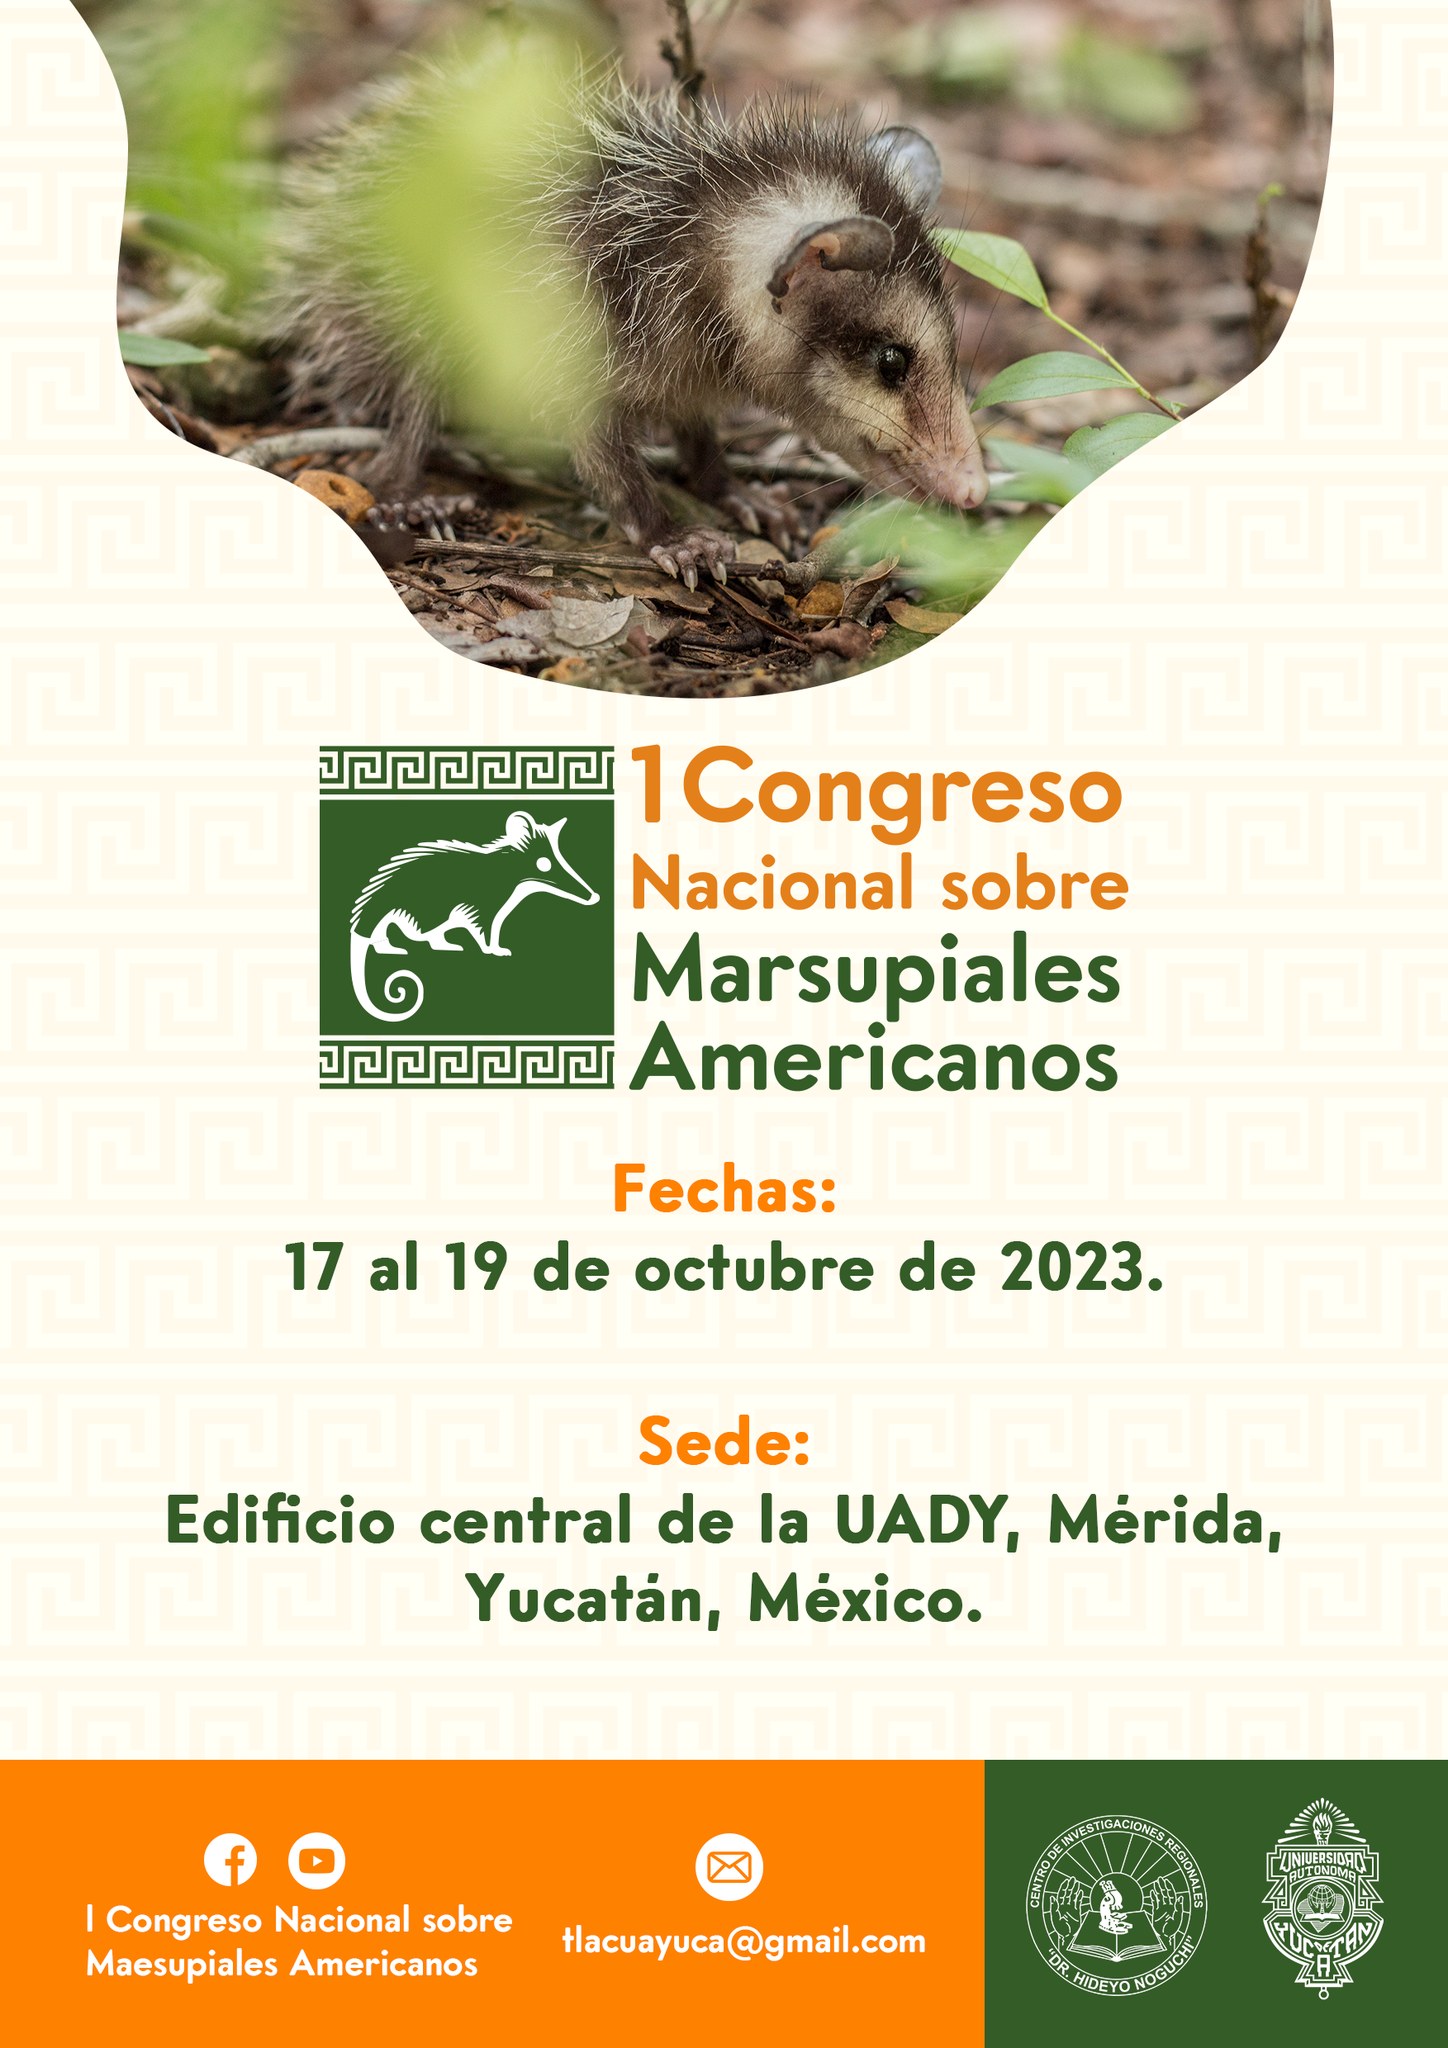  I Congreso Nacional de Marsupiales Americanos